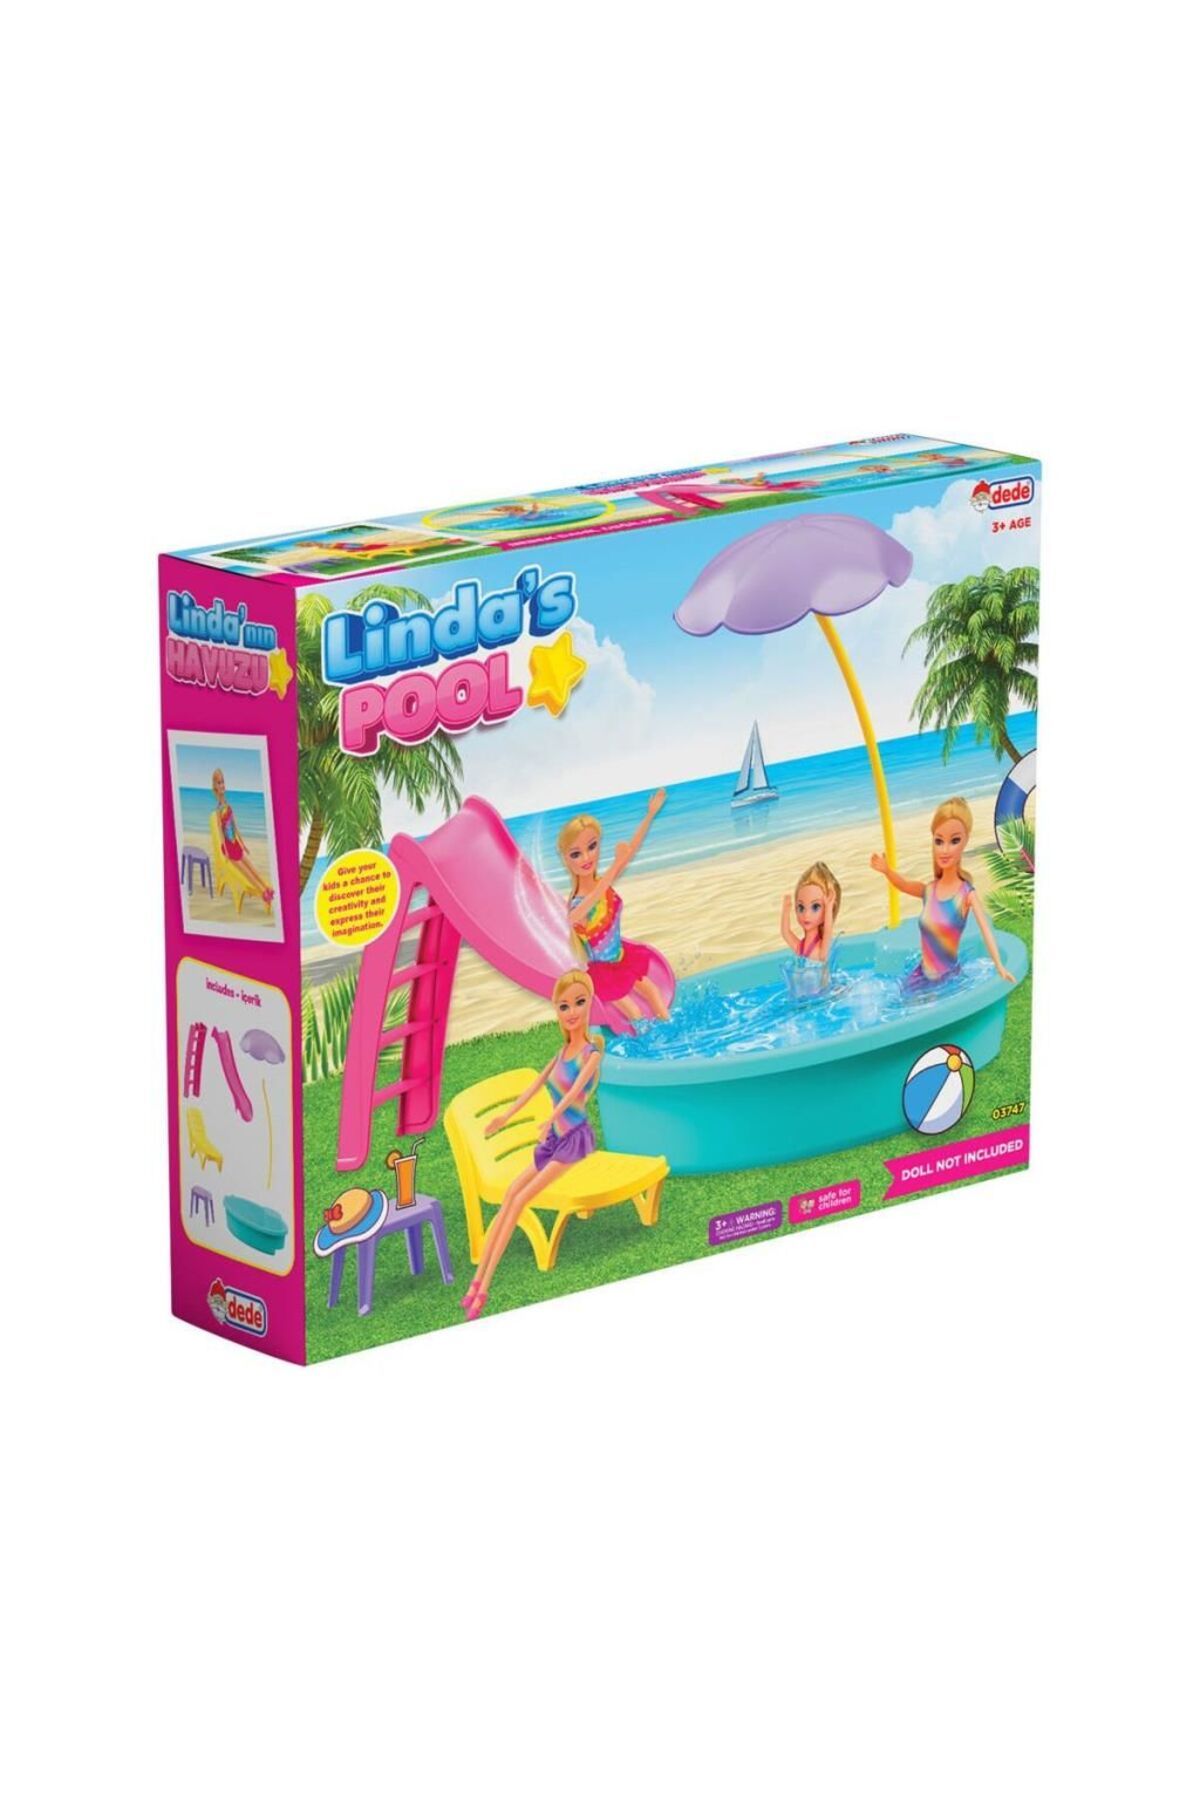 Fen Toys 03747 Linda'nın Havuzu -Dede